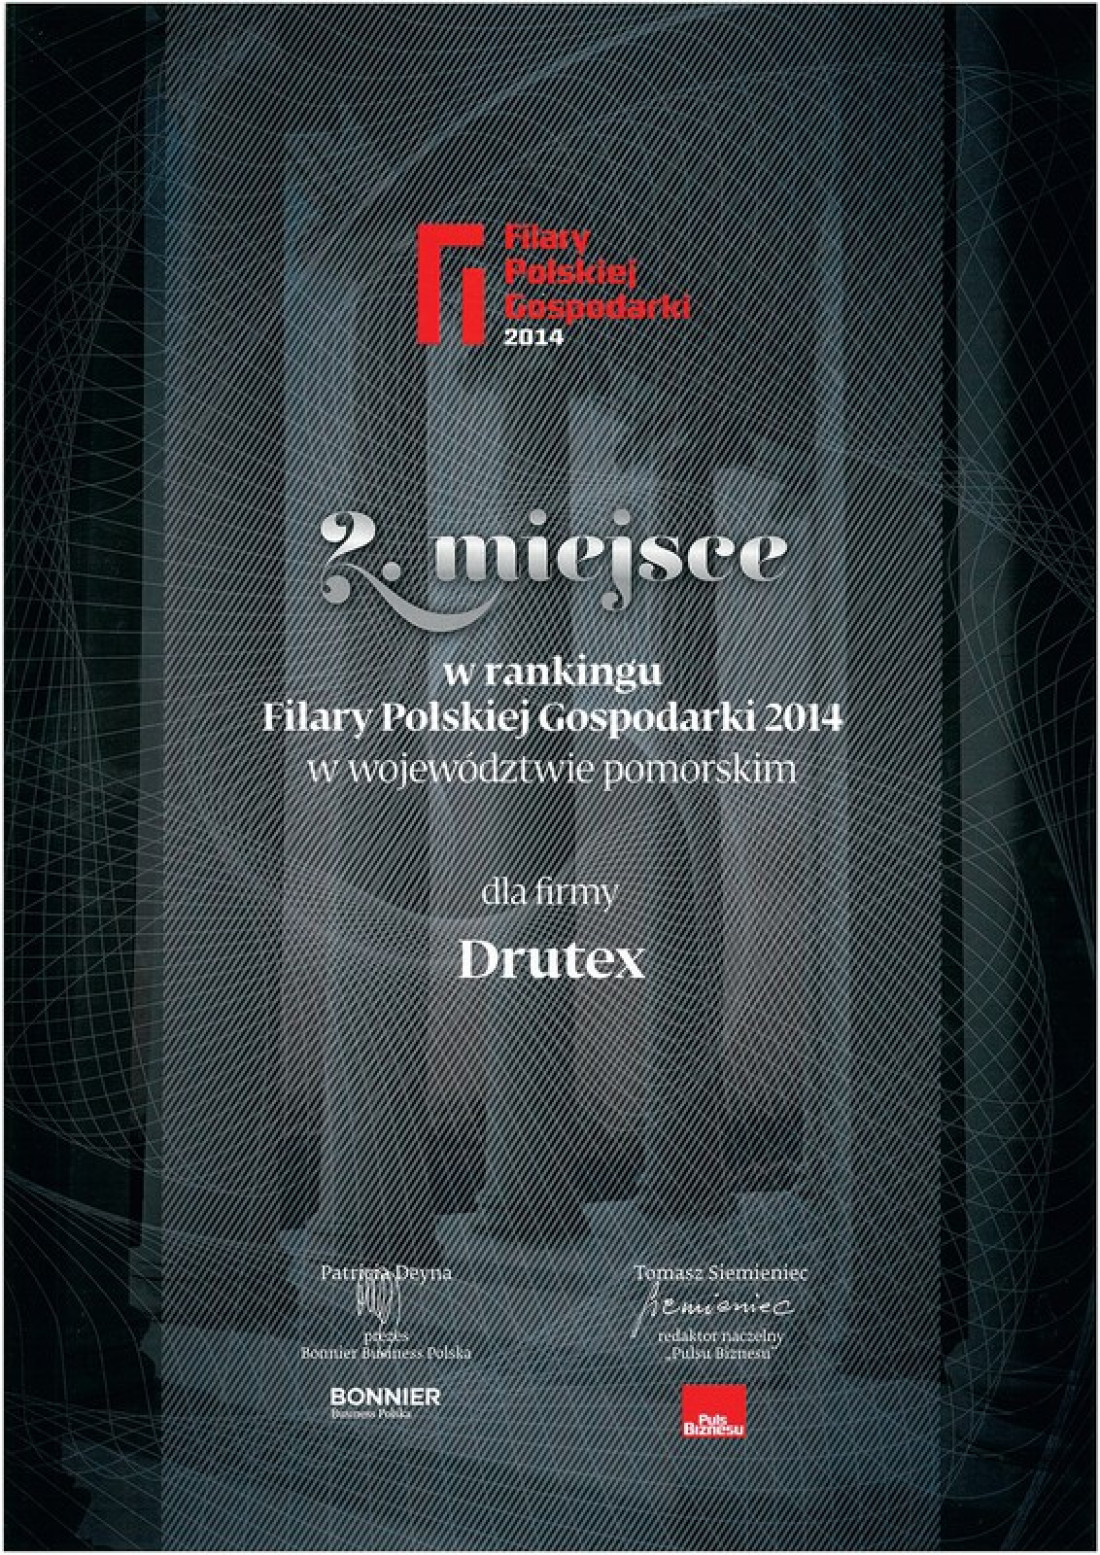 DRUTEX został wyróżniony w rankingu "Filary Polskiej Gospodarki"